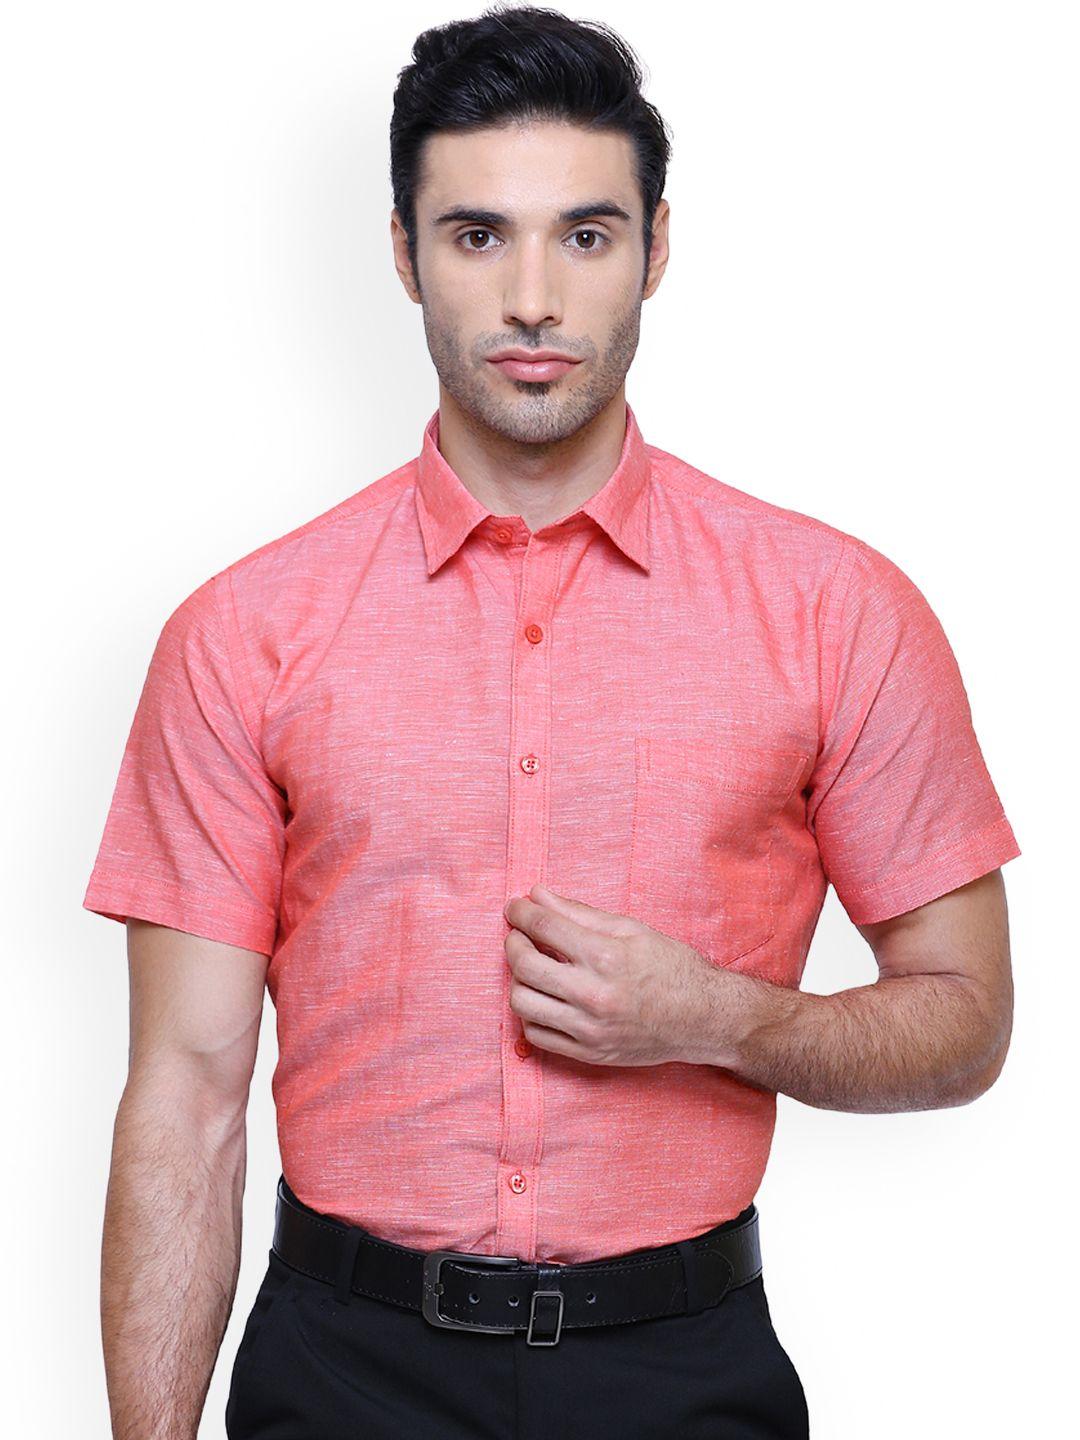 southbay-men-orange-smart-slim-fit-self-design-formal-shirt